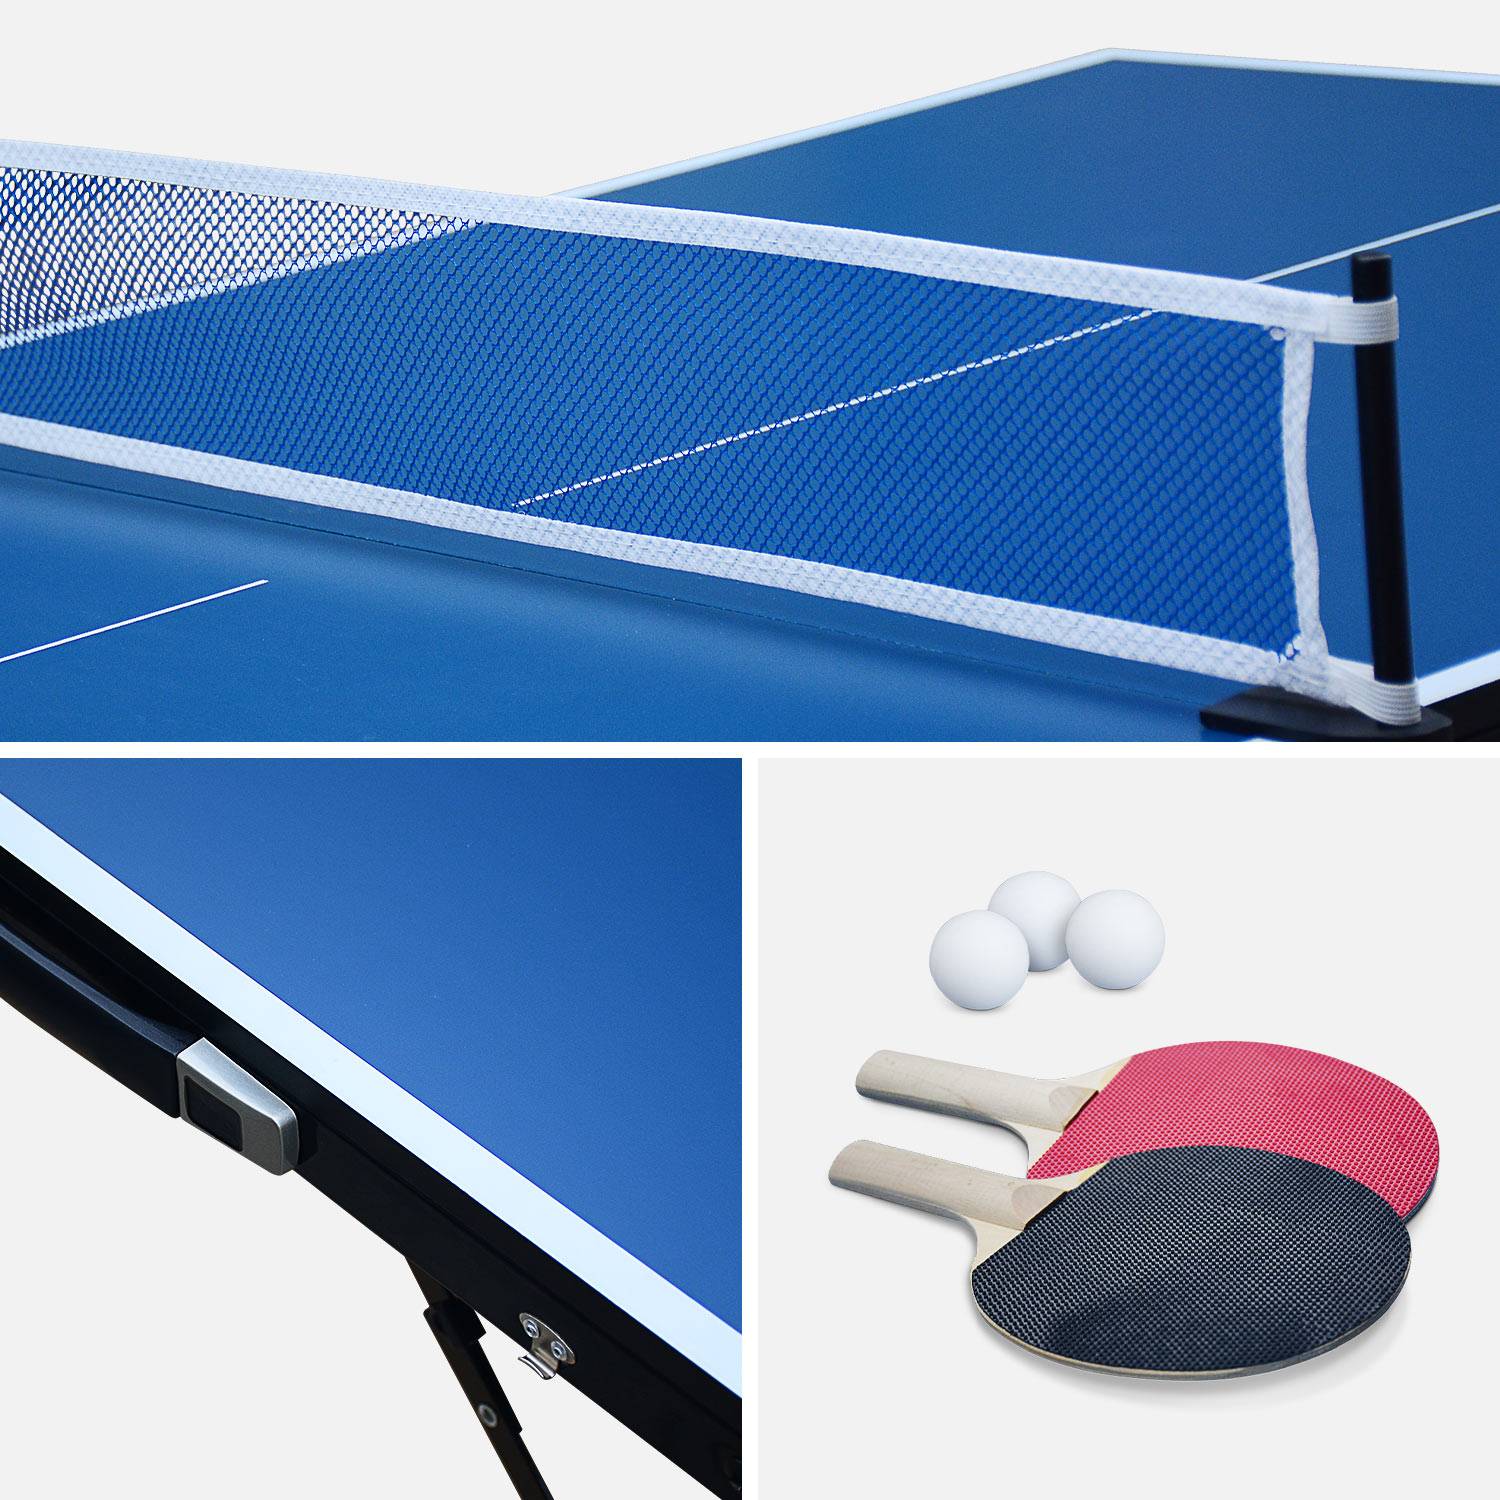 Mini tavolo da ping-pong 150x75cm - Tavolo pieghevole INDOOR blu, con 2 racchette e 3 palline, custodia da gioco per uso interno, sport ping-pong Photo4